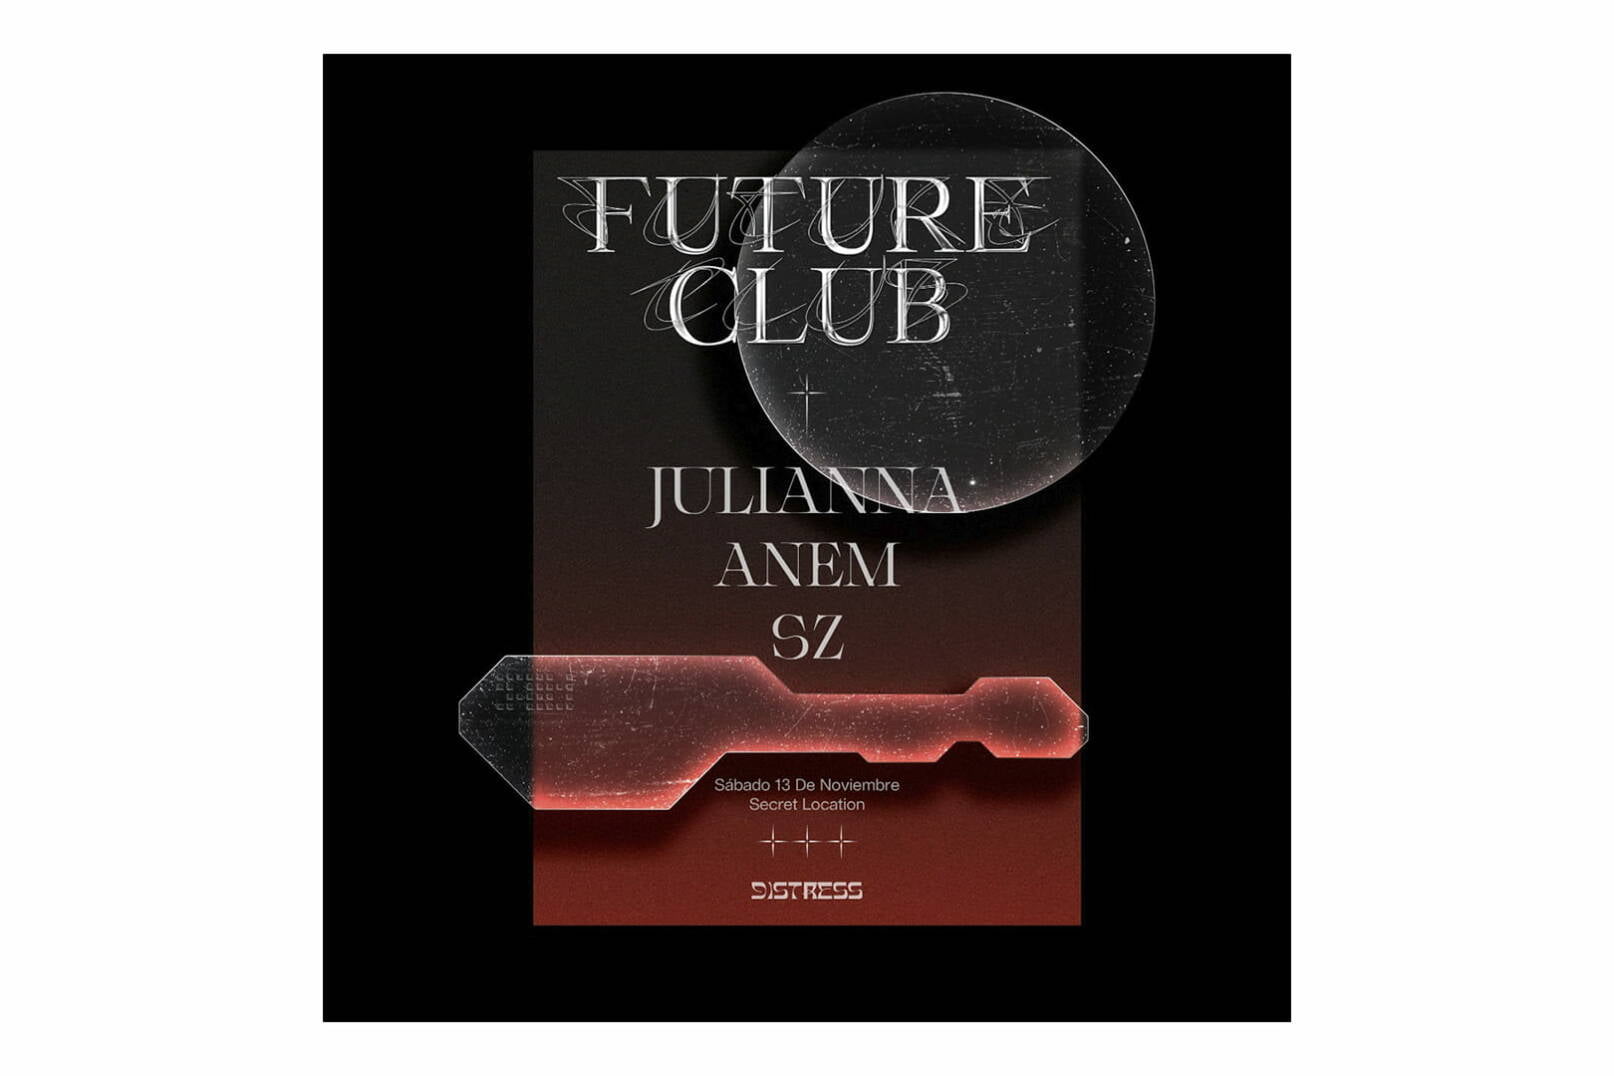 Distress presenta su primera noche de "Future Club" en Pasto de la mano de JULIANNA